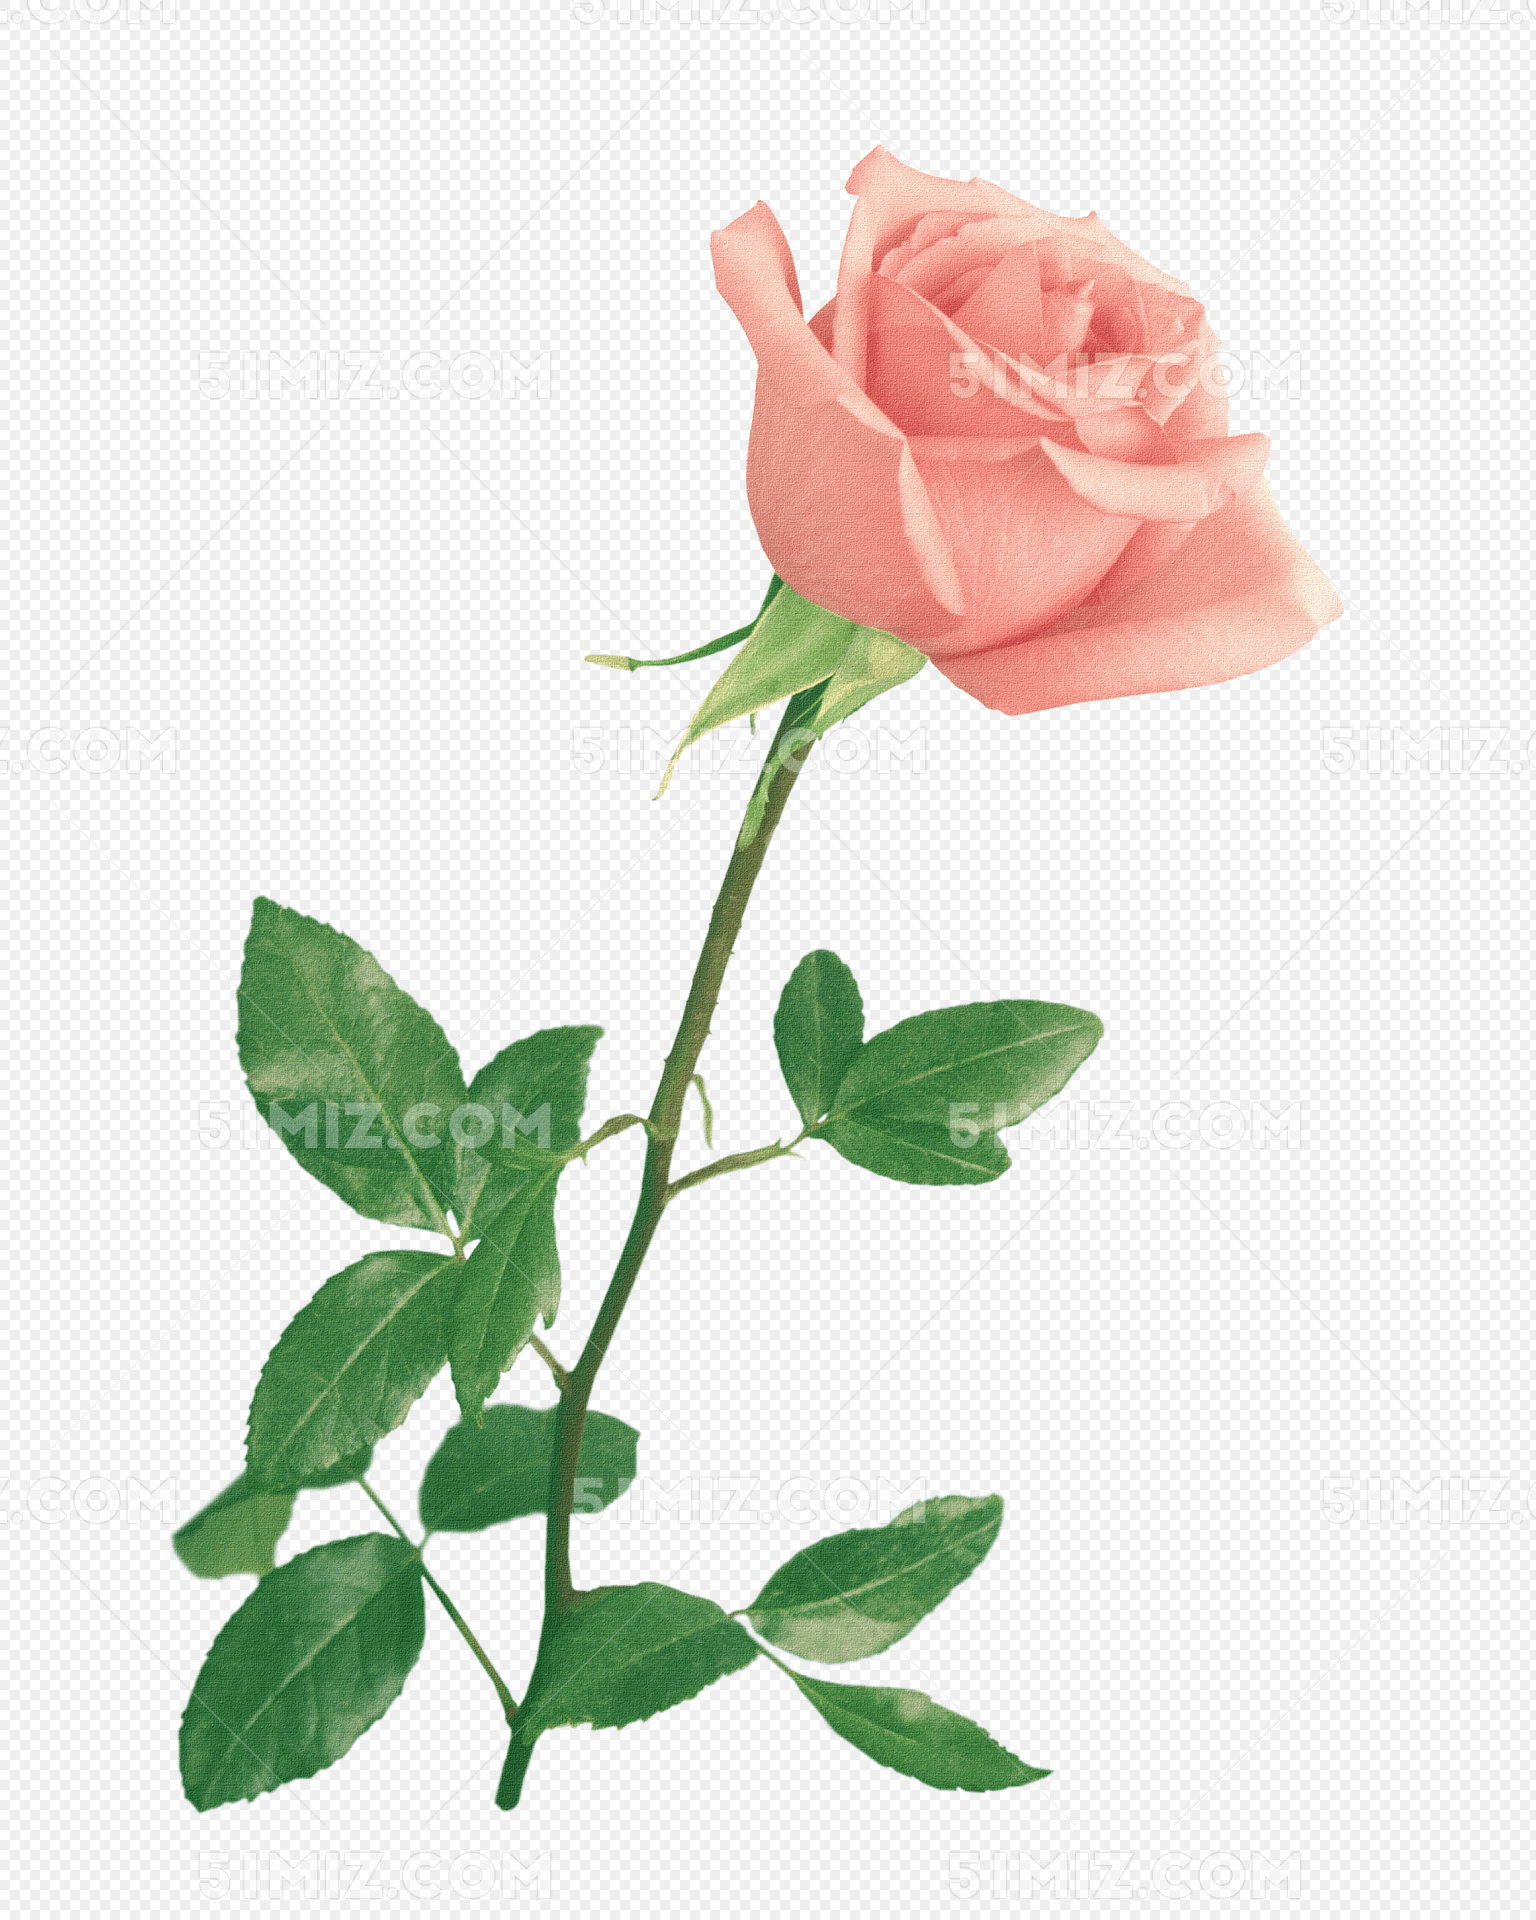 手绘水彩玫瑰花束设计素材免费下载 - 觅知网